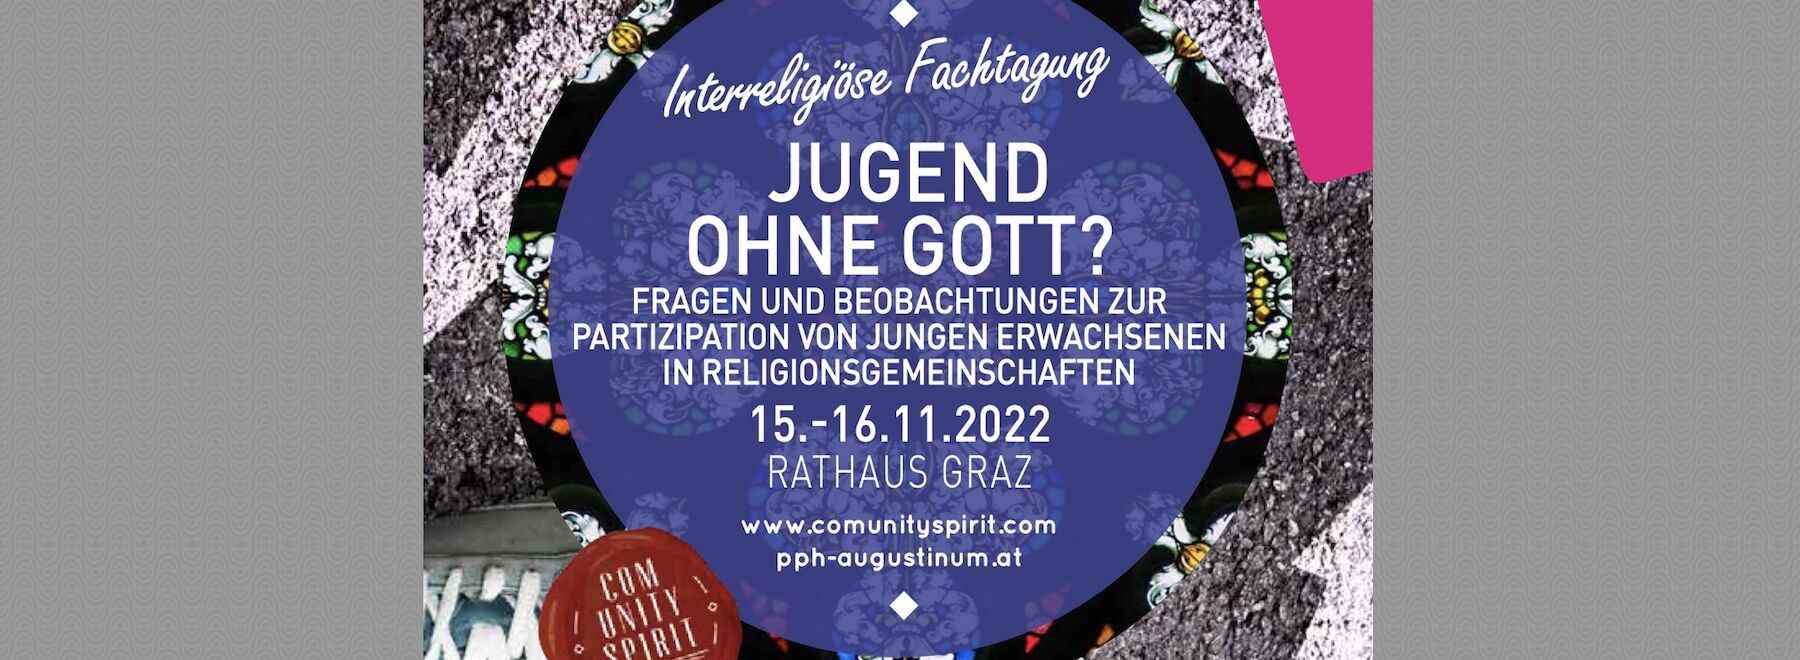 „Jugend ohne Gott?“ - Interreligiöse Fachtagung im Grazer Rathaus - eine Nachlese